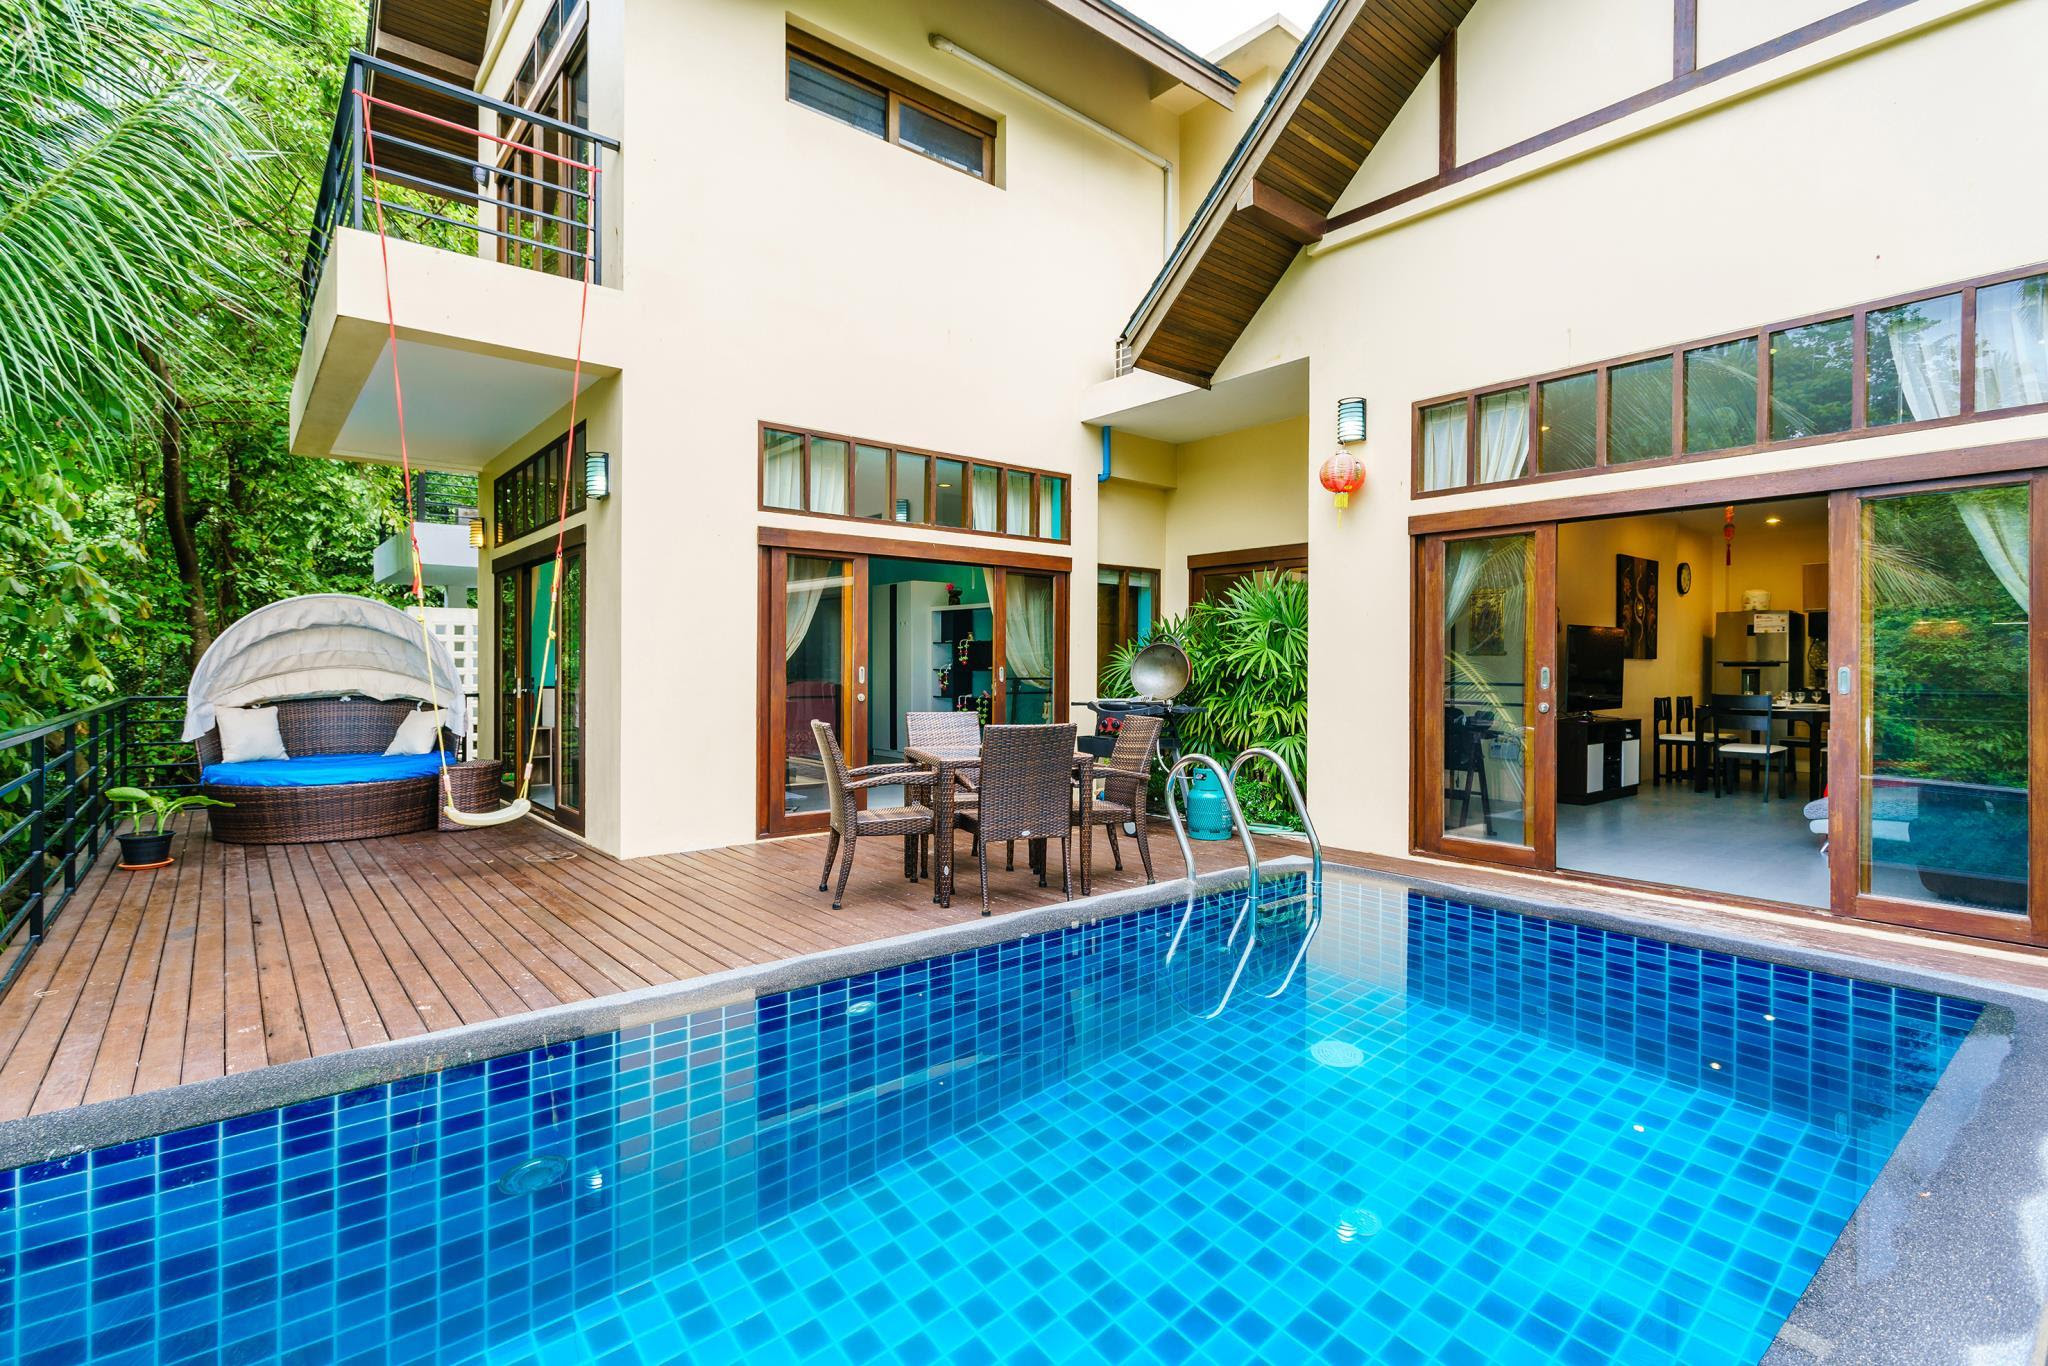 Discount [70% Off] Villa Wan Hyud No 204 2bed Pool House ...